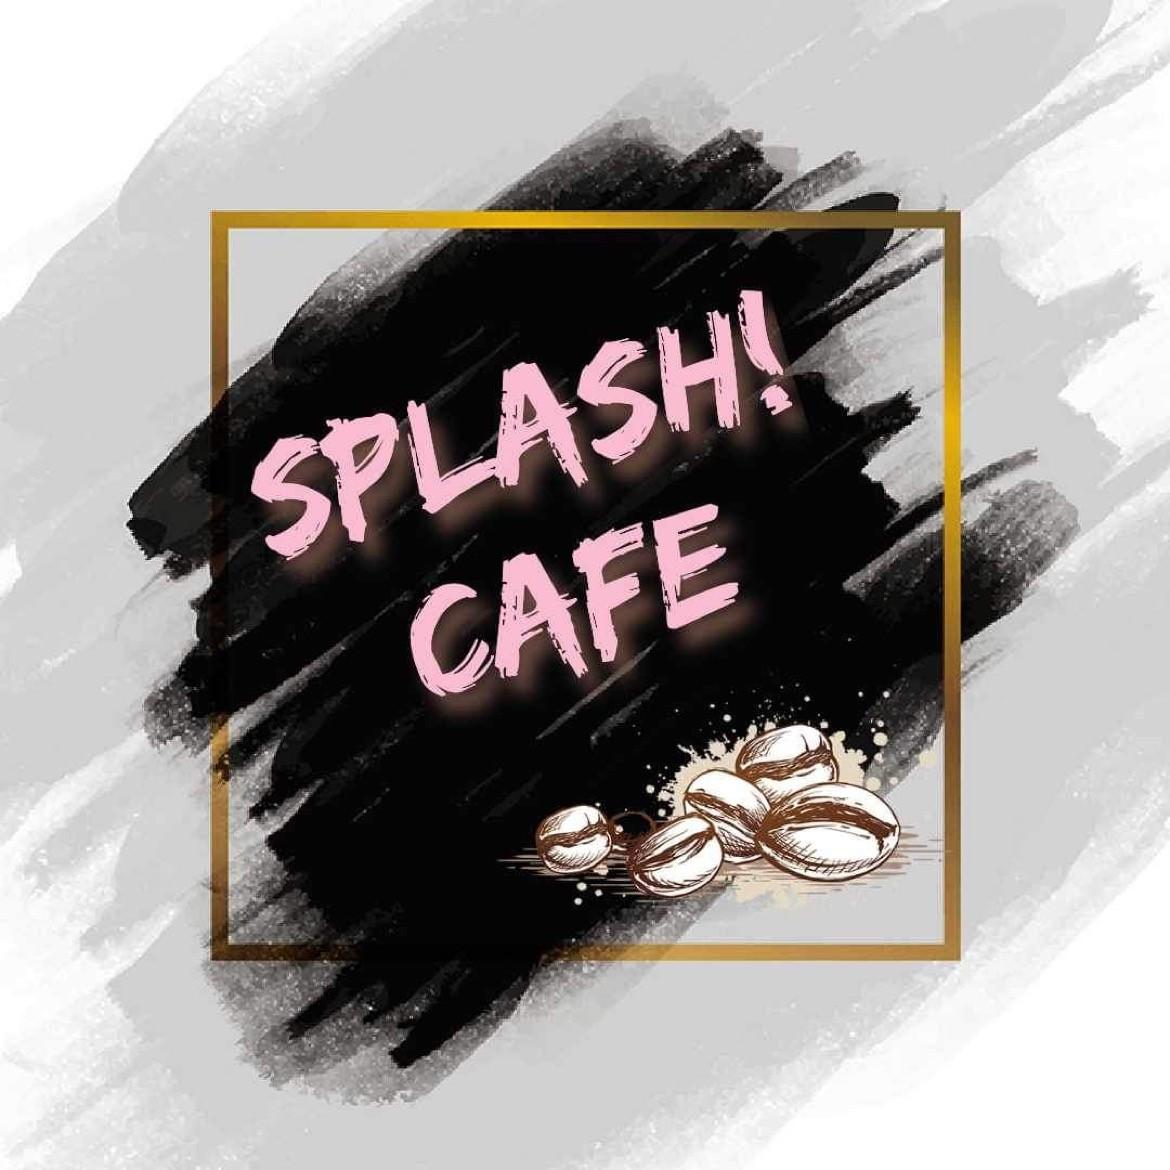 Splash cafe